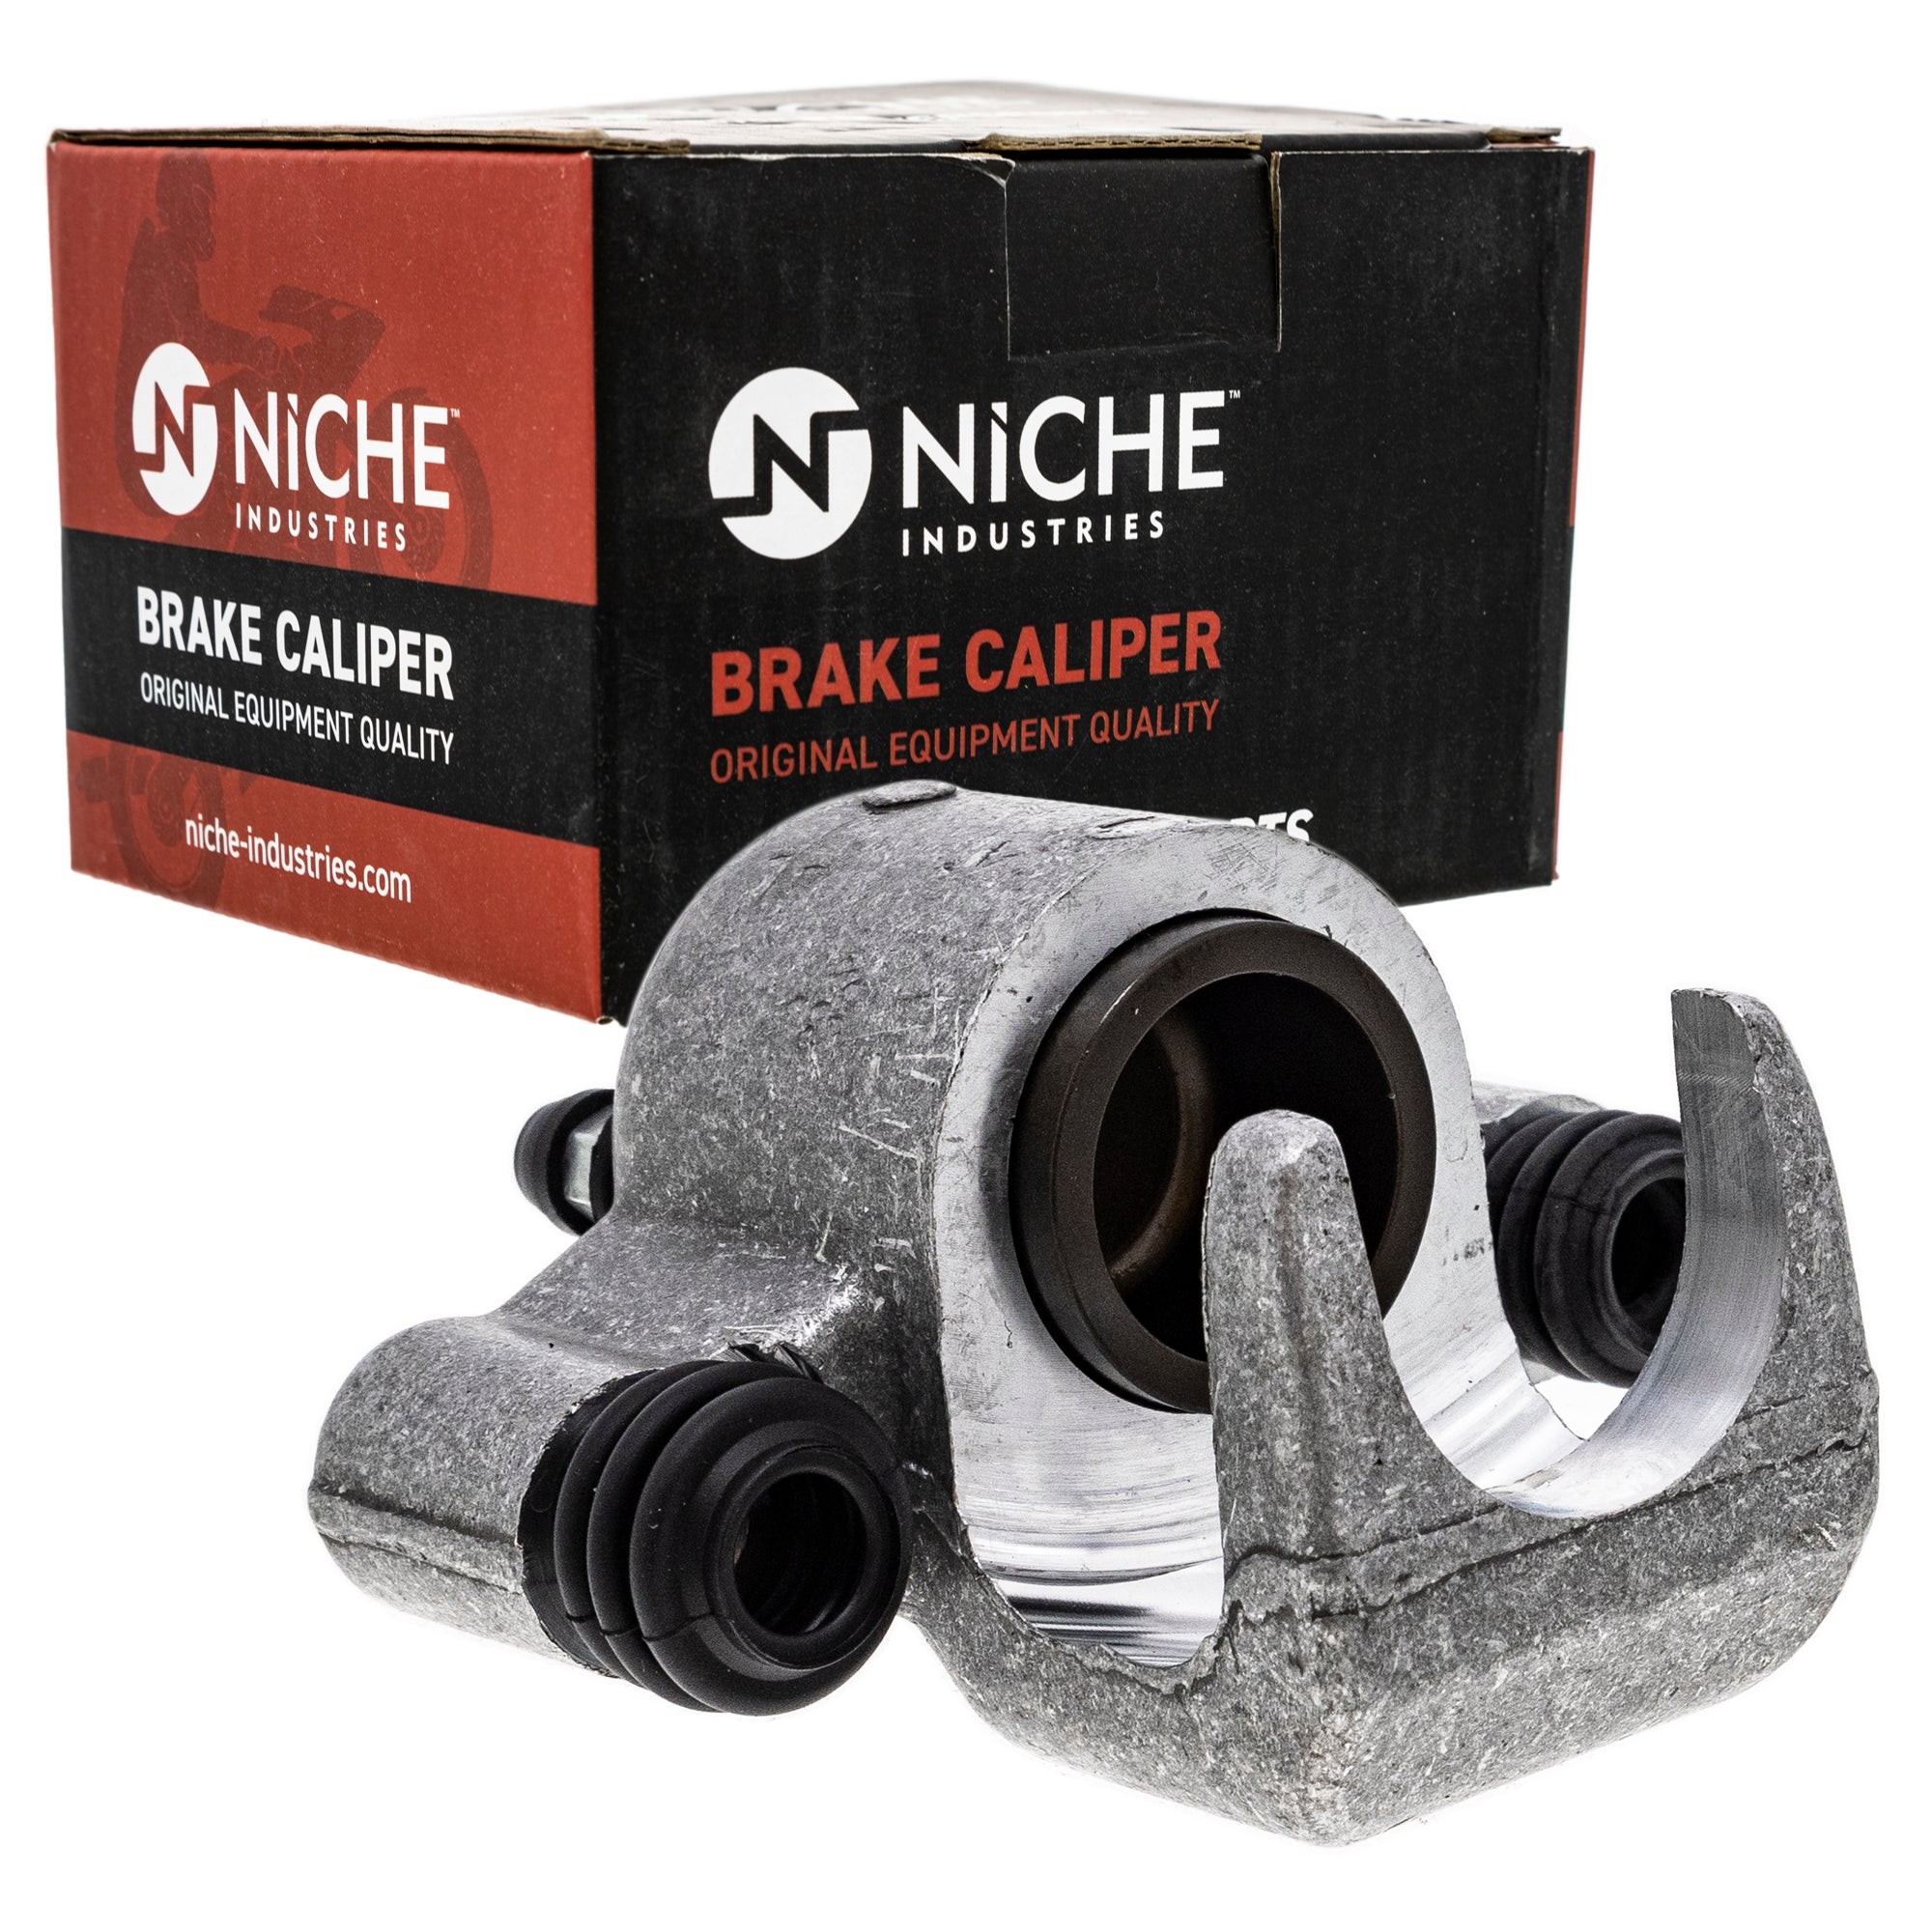 NICHE MK1001246 Brake Caliper Kit